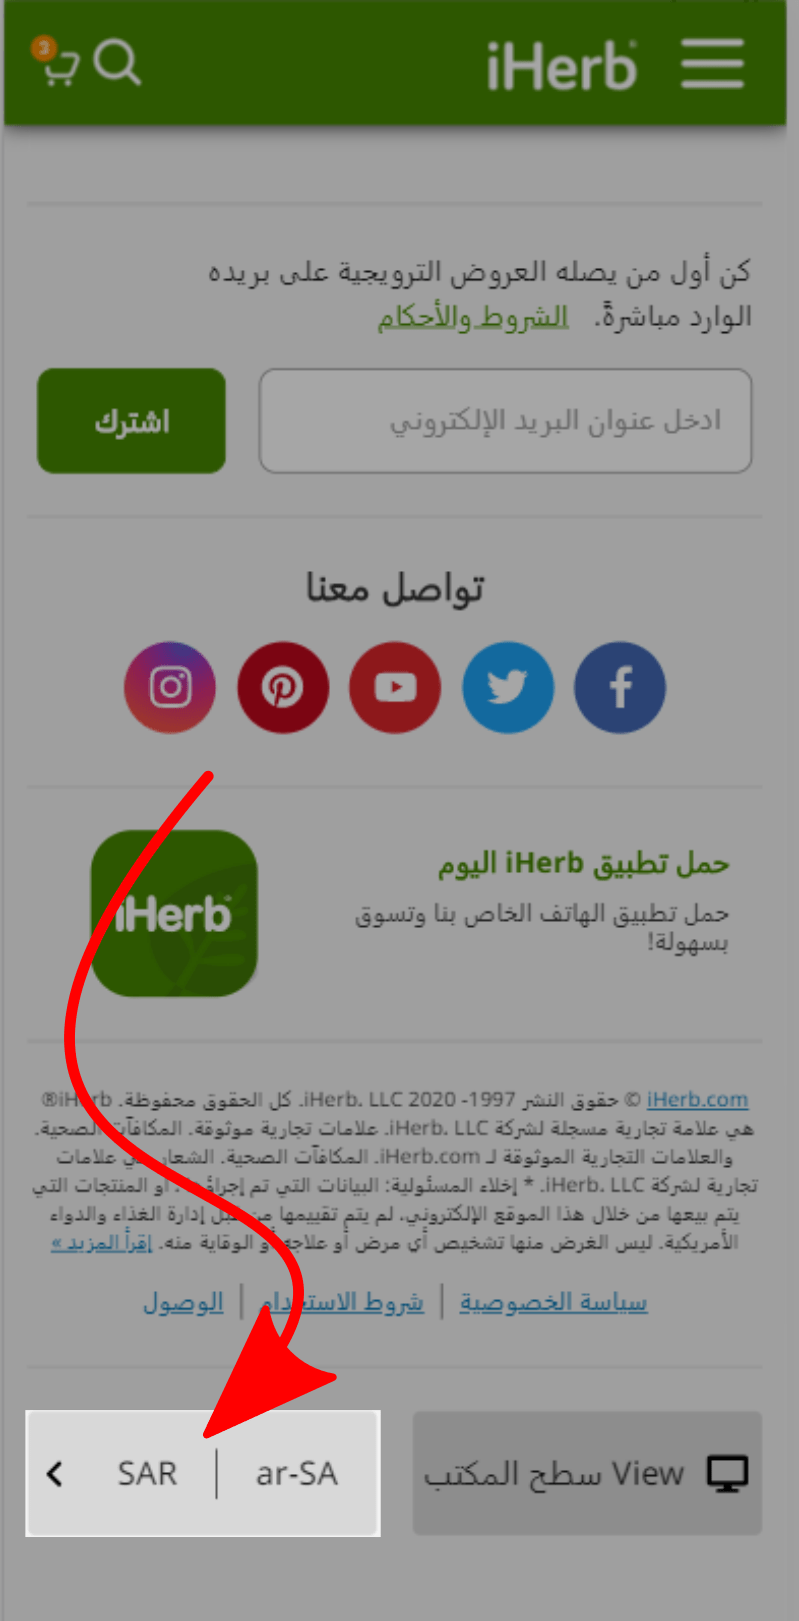 تعديل موقع اي هيرب ليكون بالعربي في المغرب